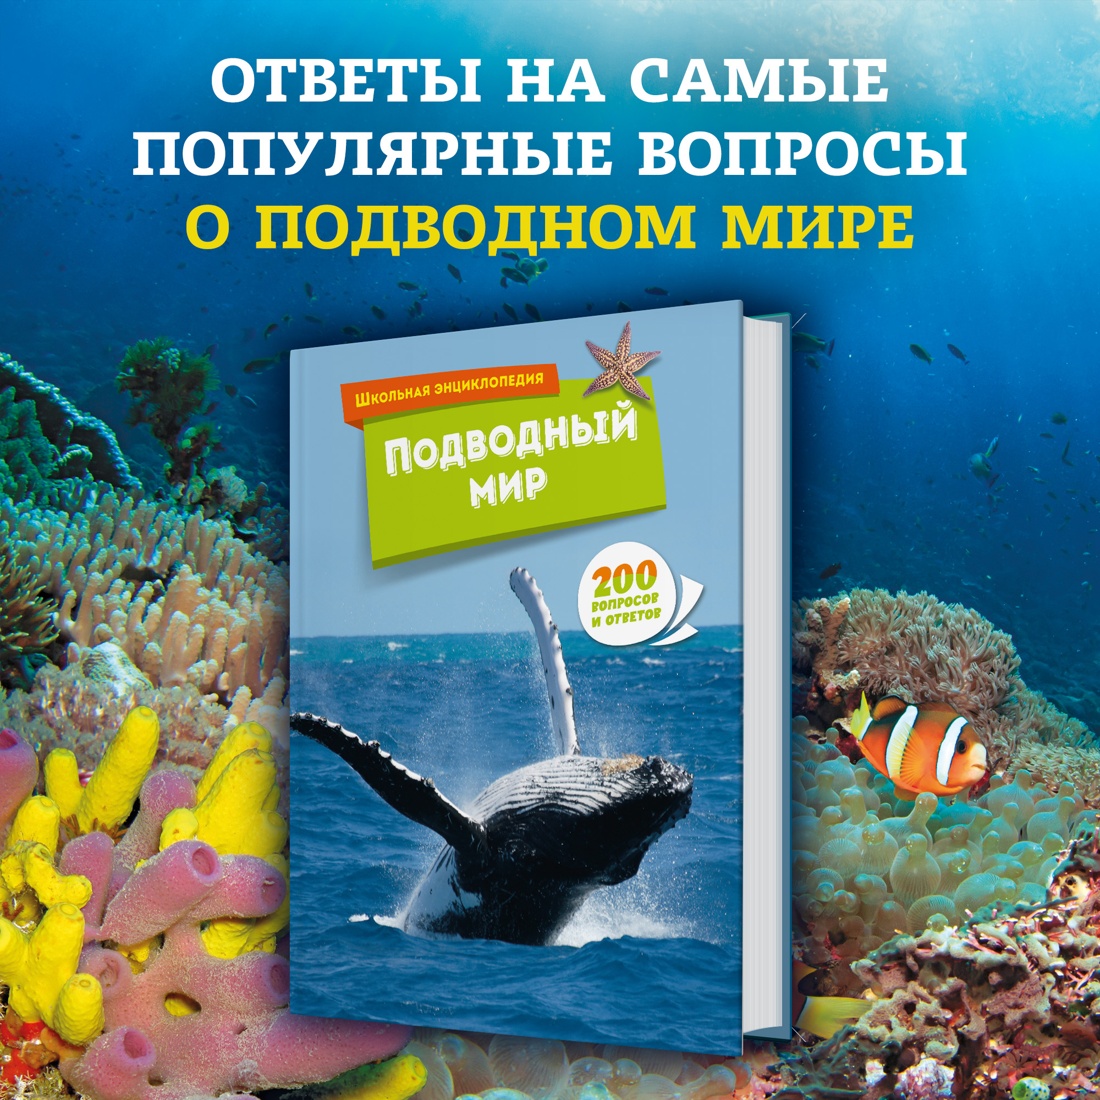 Промо материал к книге "Подводный мир" №0